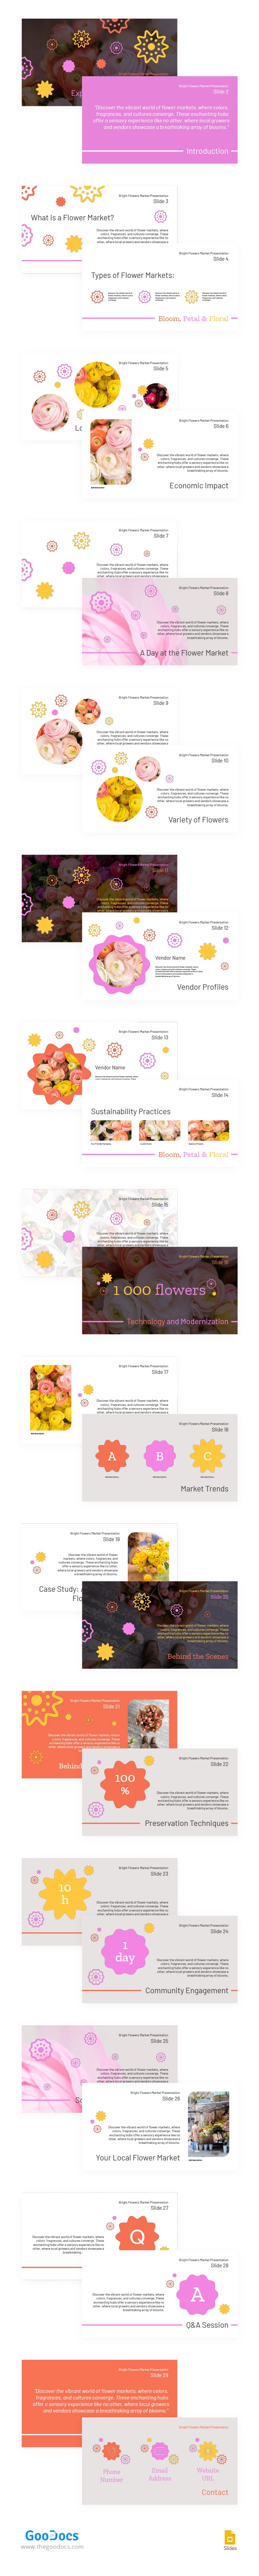 Apresentação do Mercado de Flores Brilhantes - free Google Docs Template - 10067045